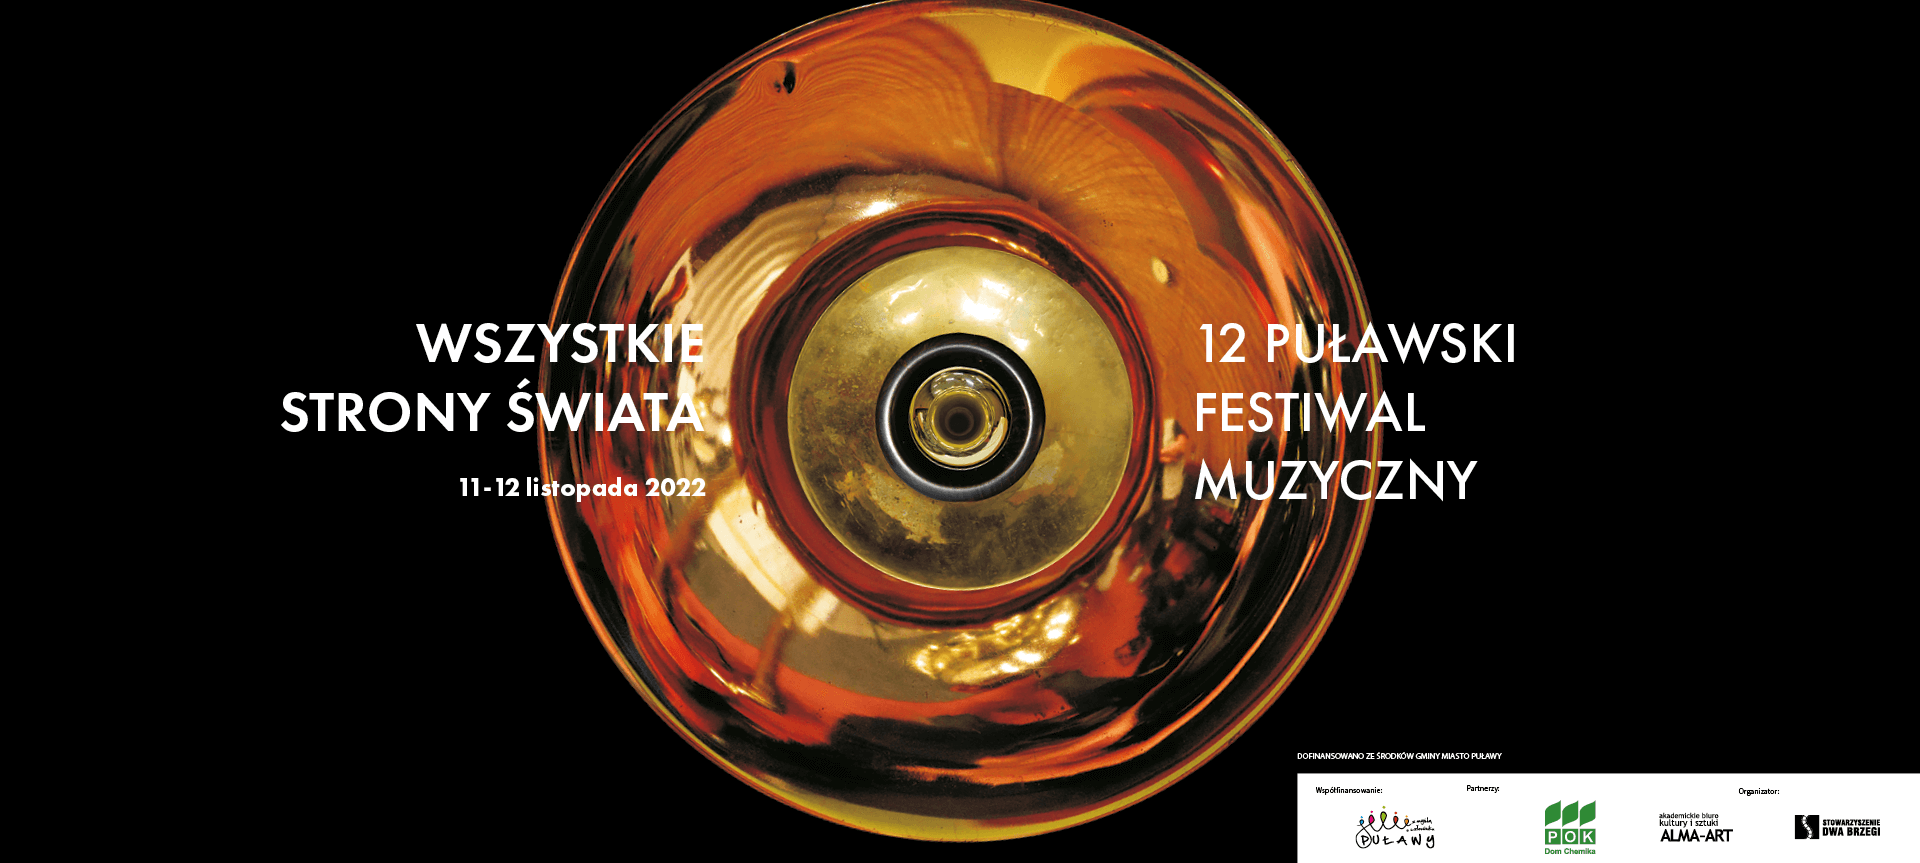 Puławski Festiwal Muzyczny Wszystkie Strony Świata